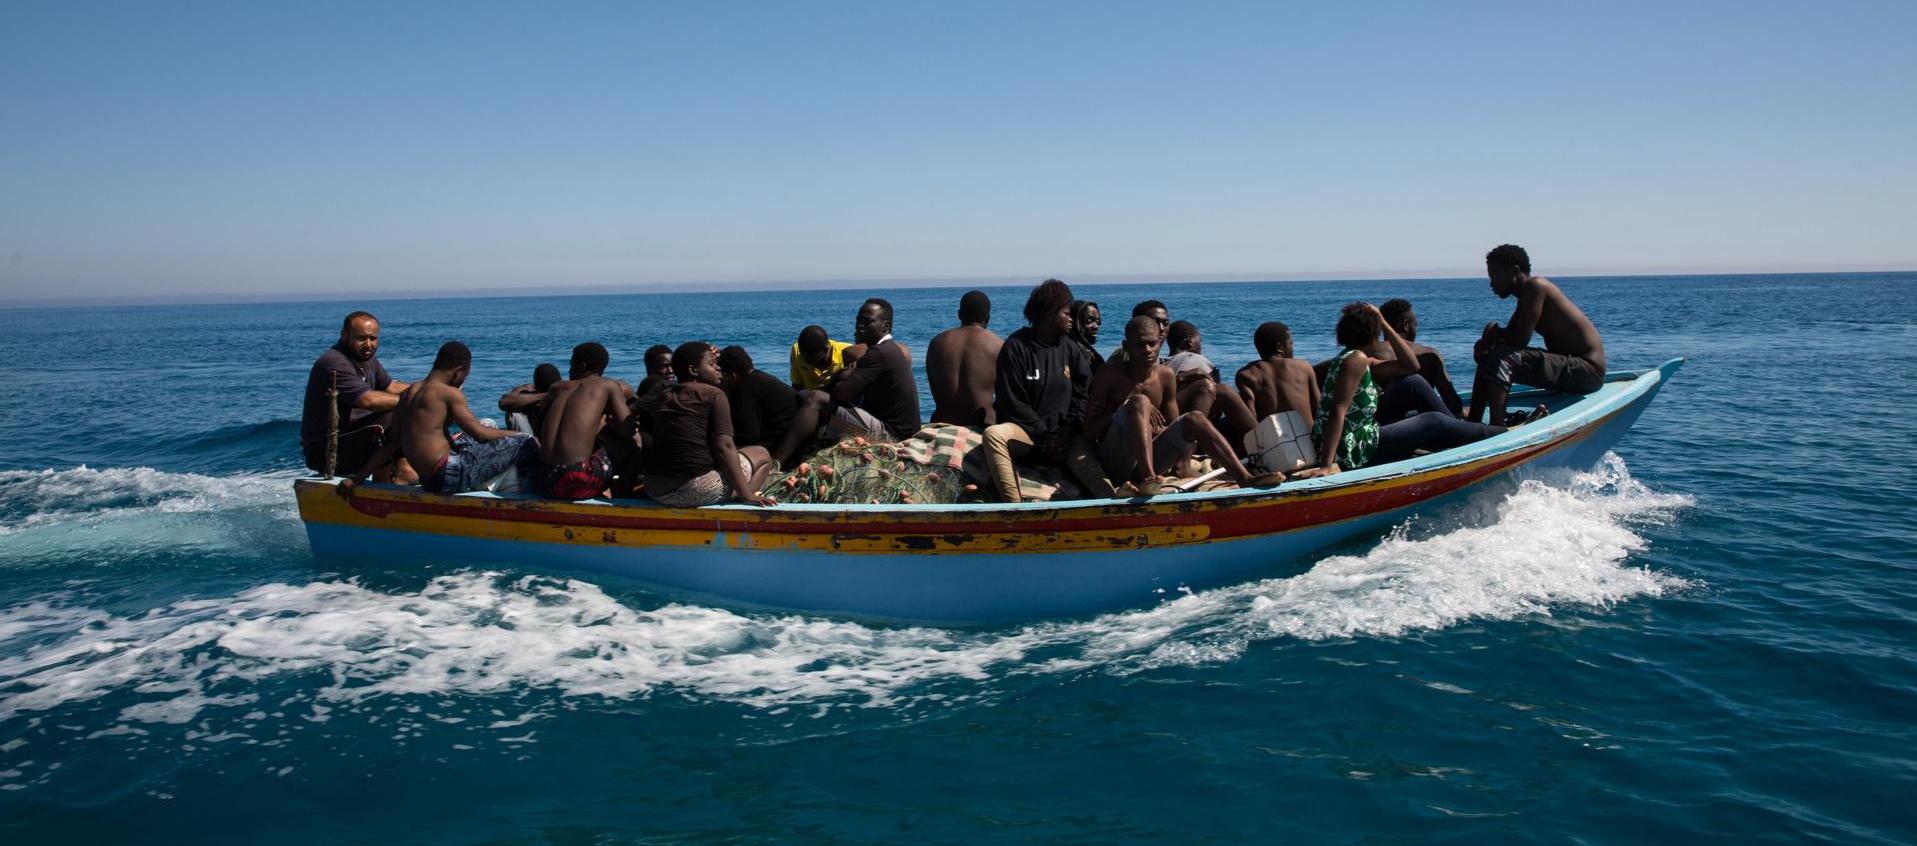 Vista de personas rescatadas tras un naufragio en costas de Libia, en una fotografía de archivo